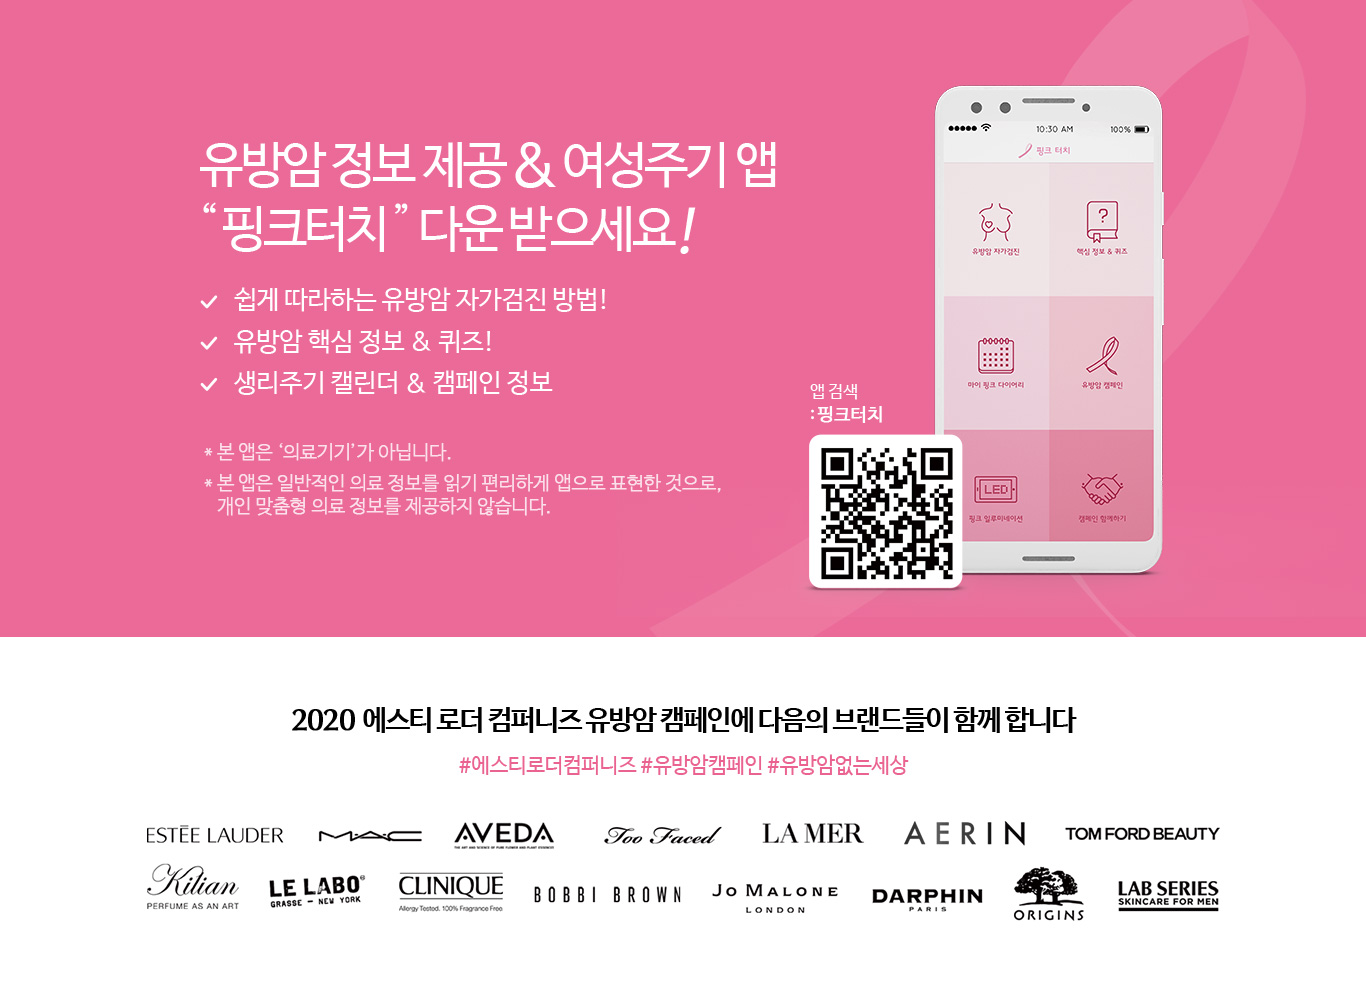 유방암 정보 제공&여성주기 앱 "핑크터치" 다운 받으세요!